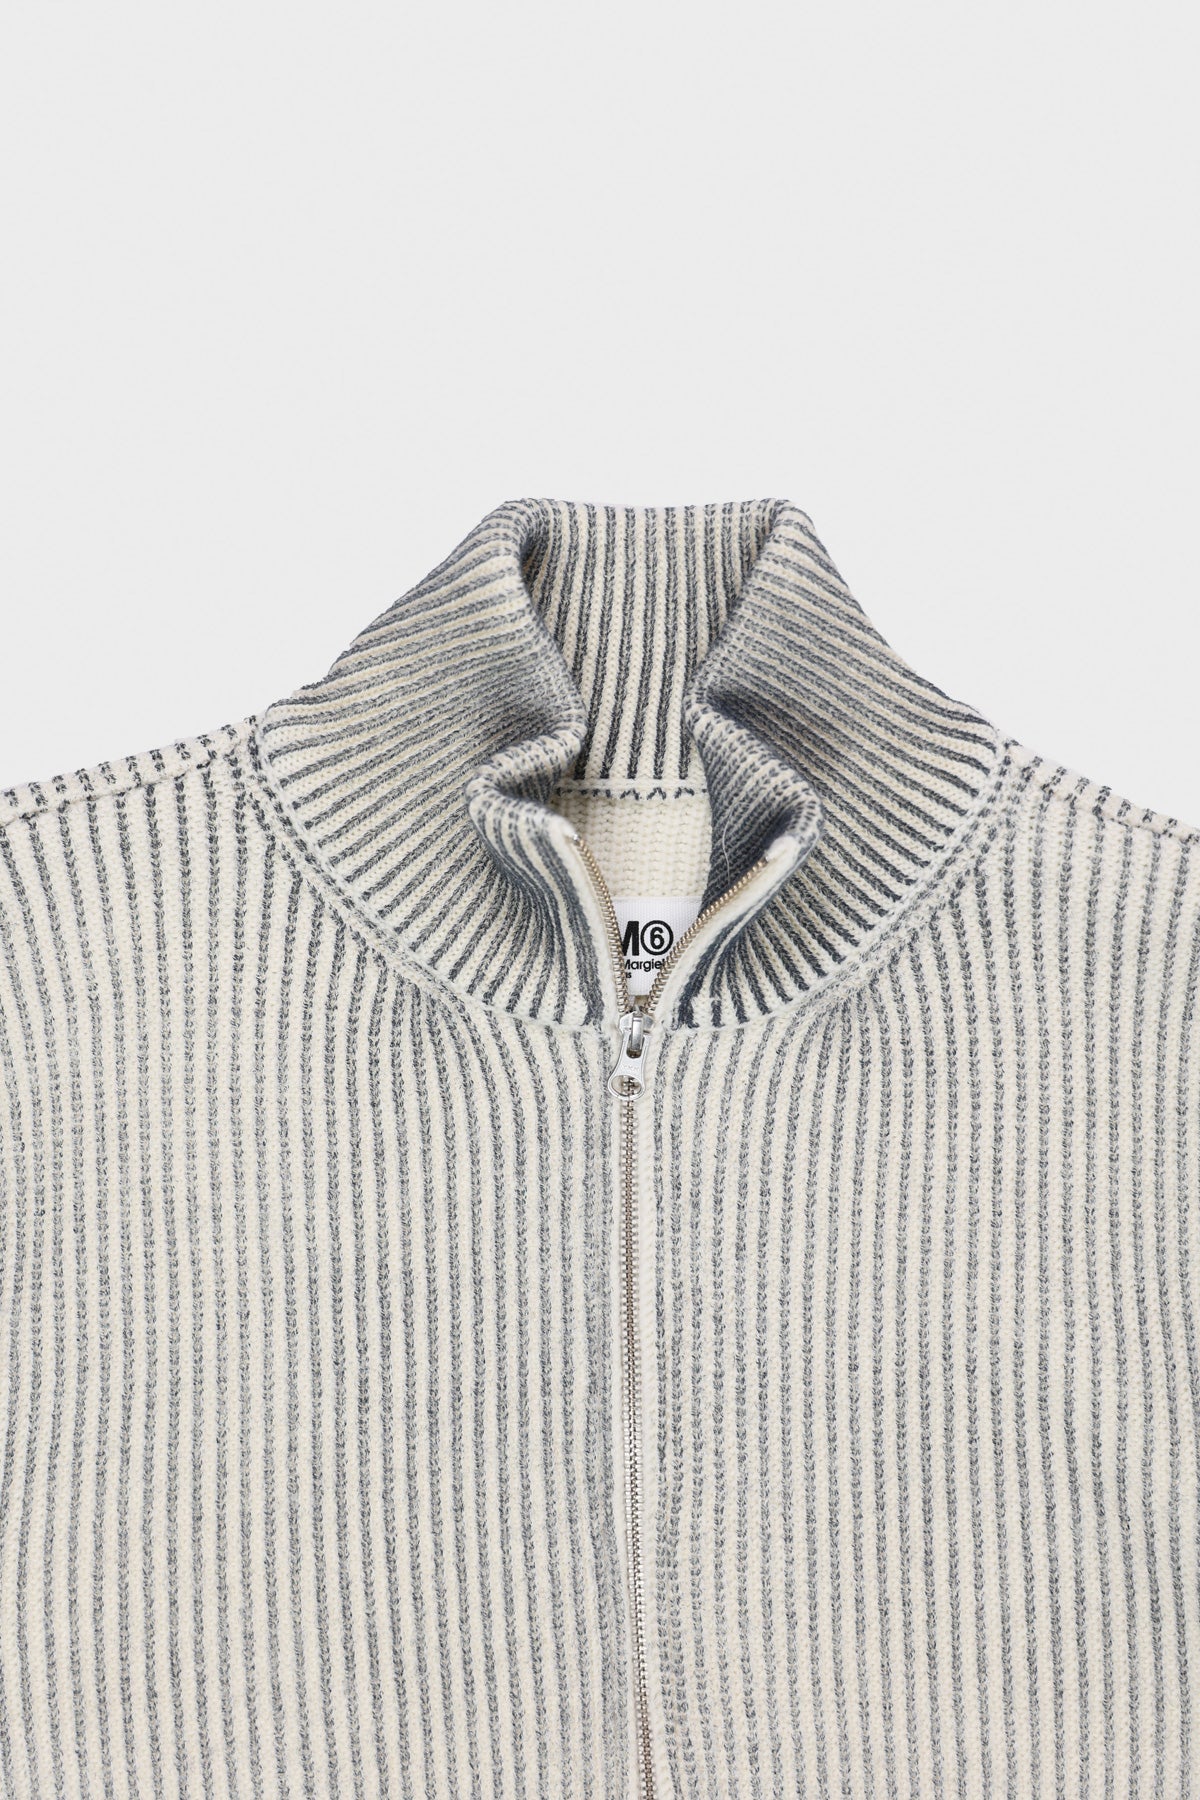 Zip Sweater - Grey